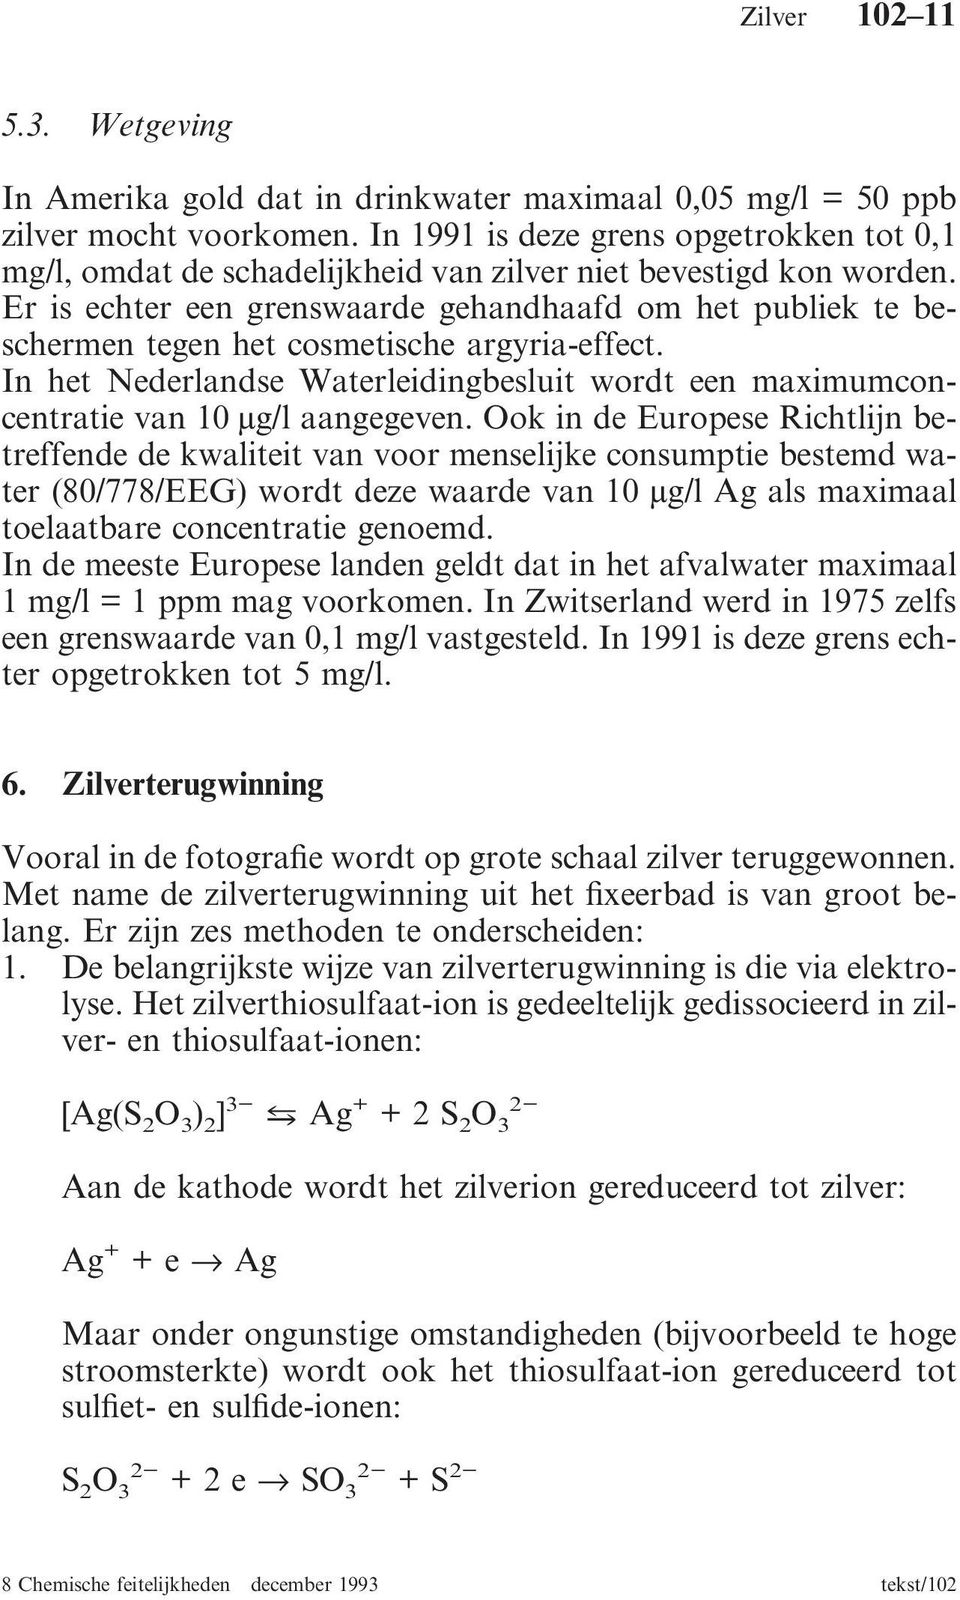 Er is echter een grenswaarde gehandhaafd om het publiek te beschermen tegen het cosmetische argyria-effect. In het Nederlandse Waterleidingbesluit wordt een maximumconcentratie van 10 µg/l aangegeven.